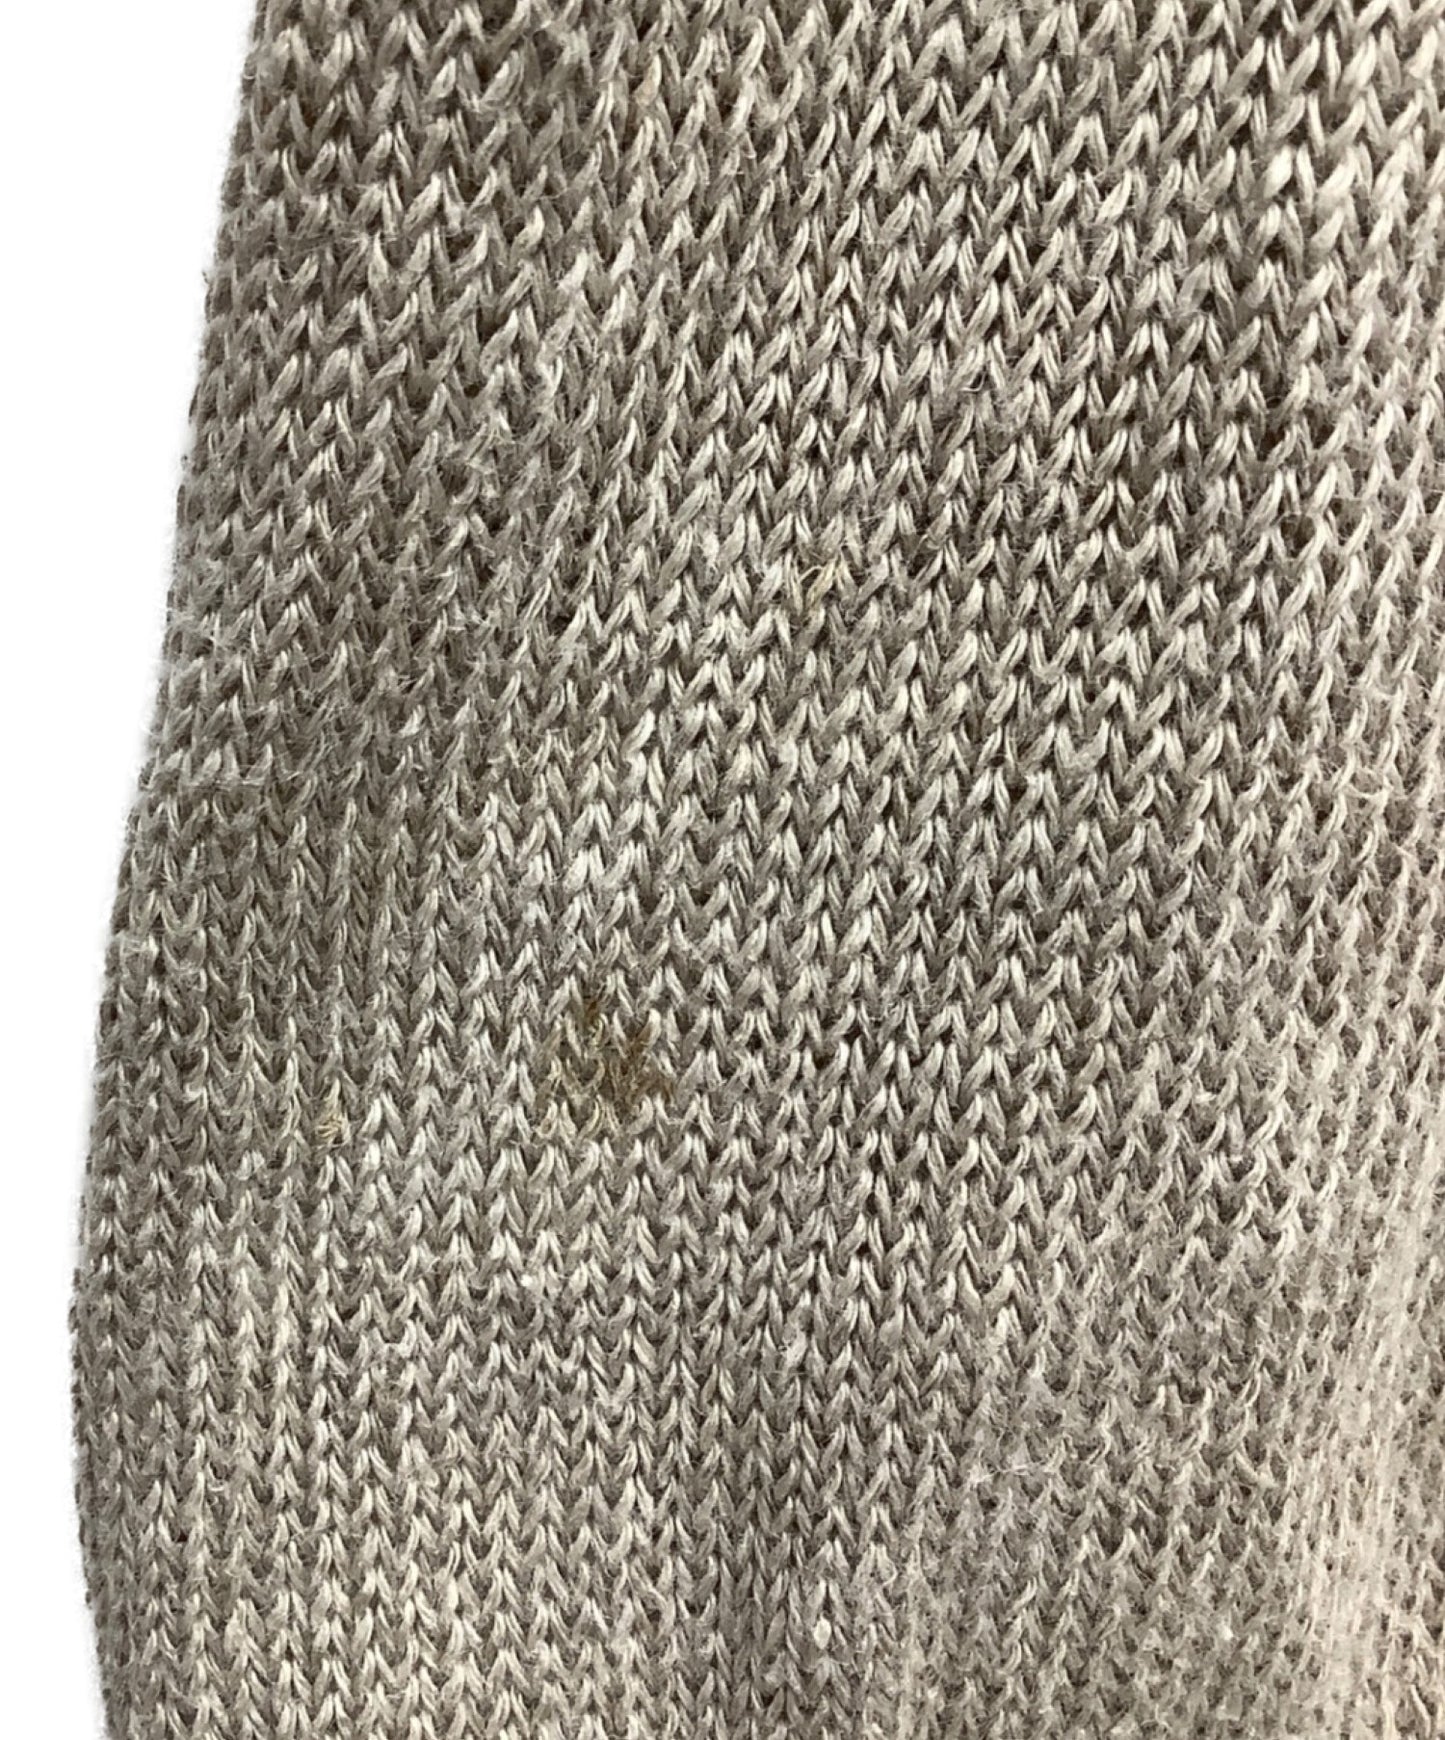 Comme des Garcons Homme 95SS Linen Knit HN-10210